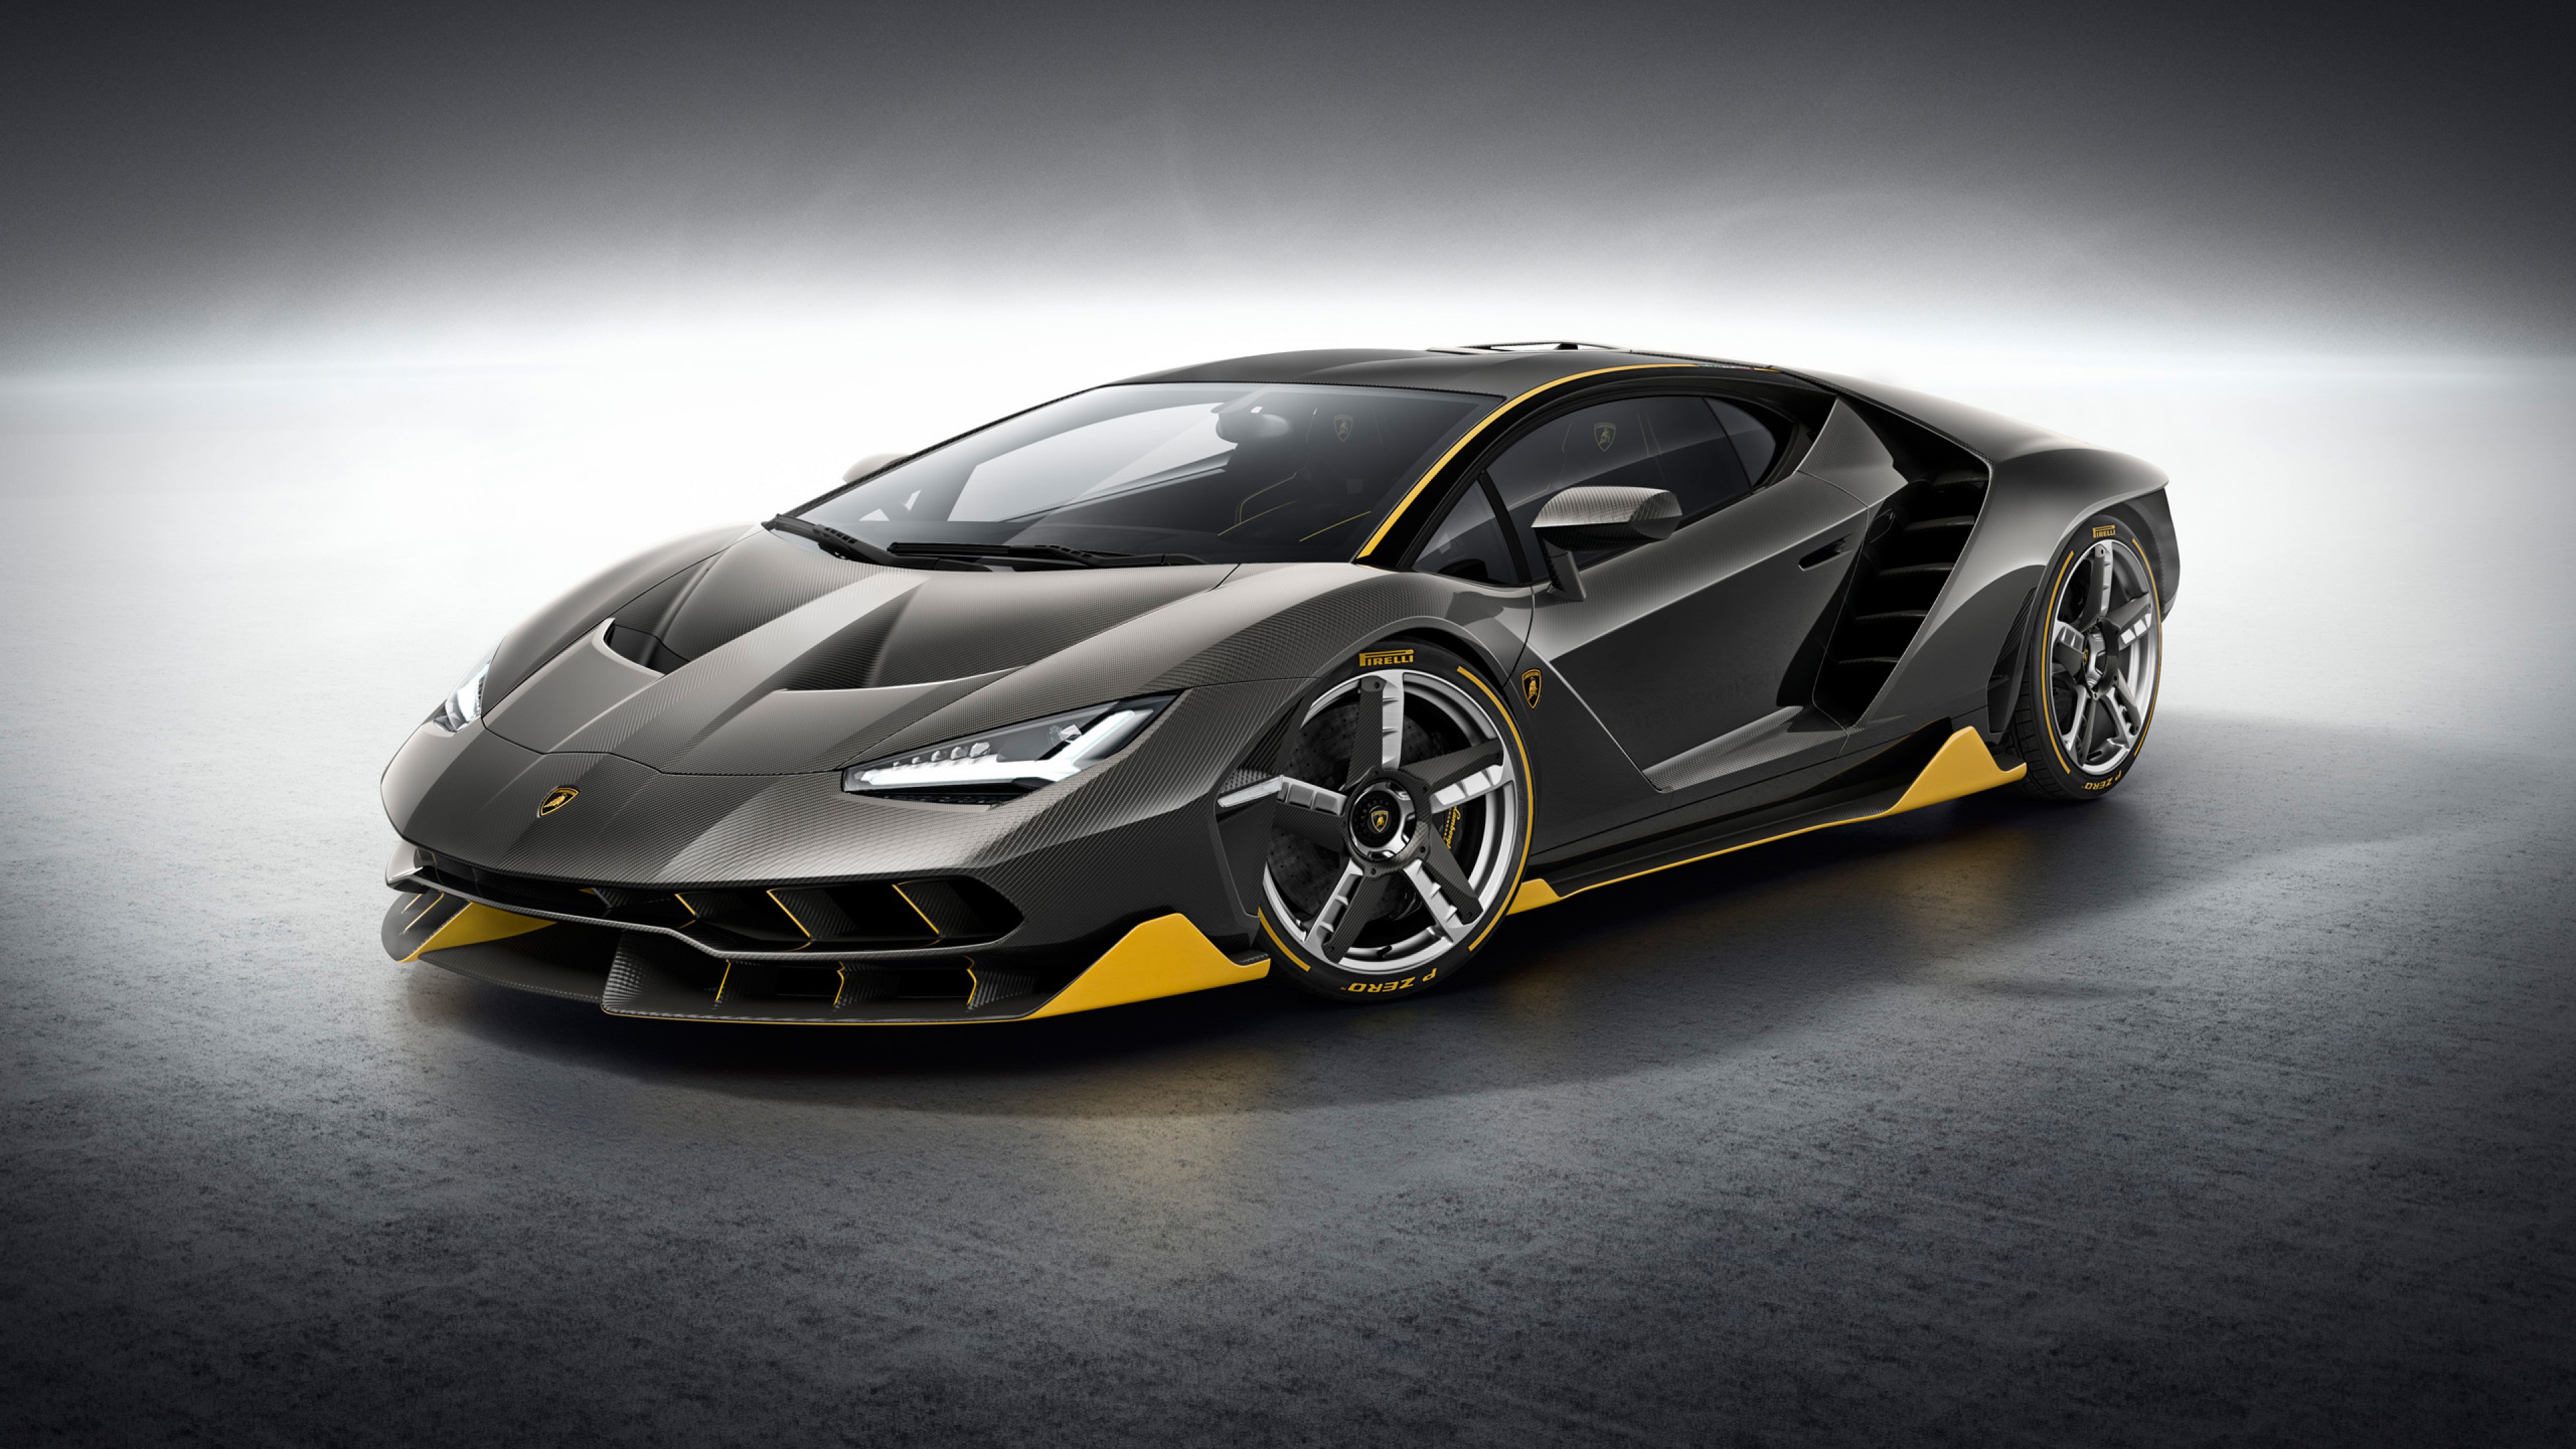 Lamborghini Centenario 4k Hd Wallpaper For Desktop And Mobiles 4k Ultra